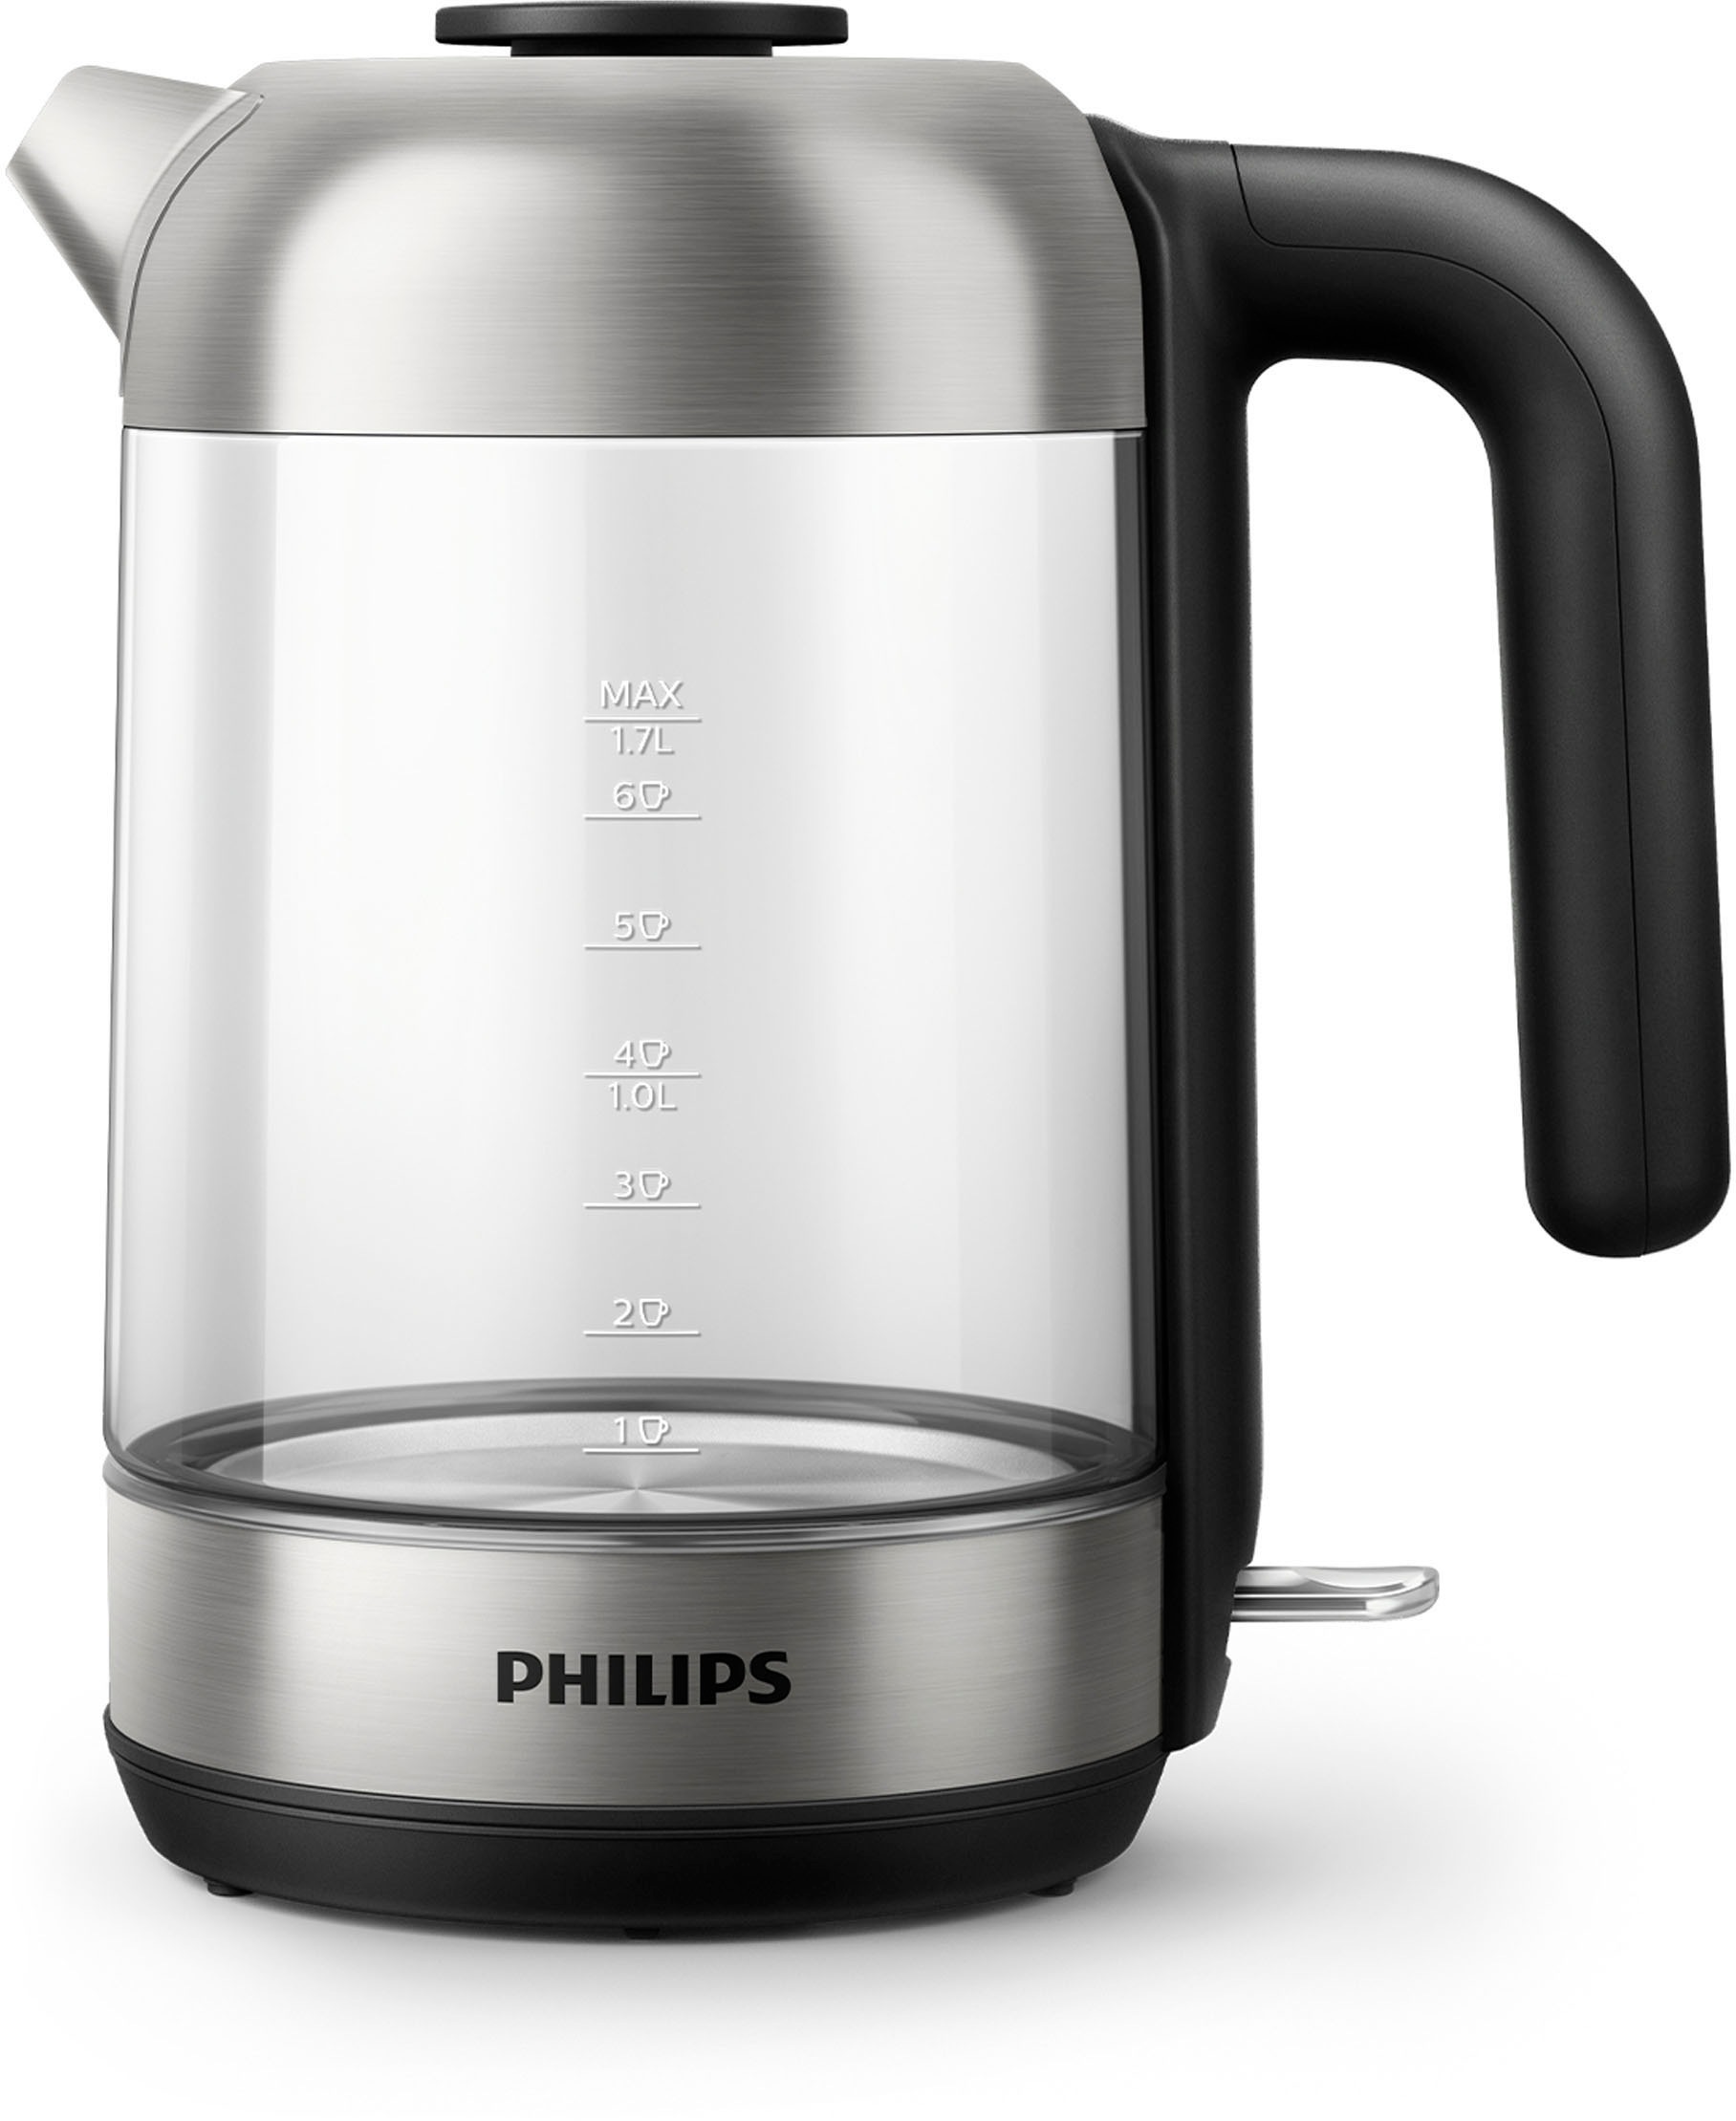 Philips Wasserkocher »Series 5000 HD9339/80«, 1,7 l, 2200 W, Glasgehäuse, Trockengehschutz